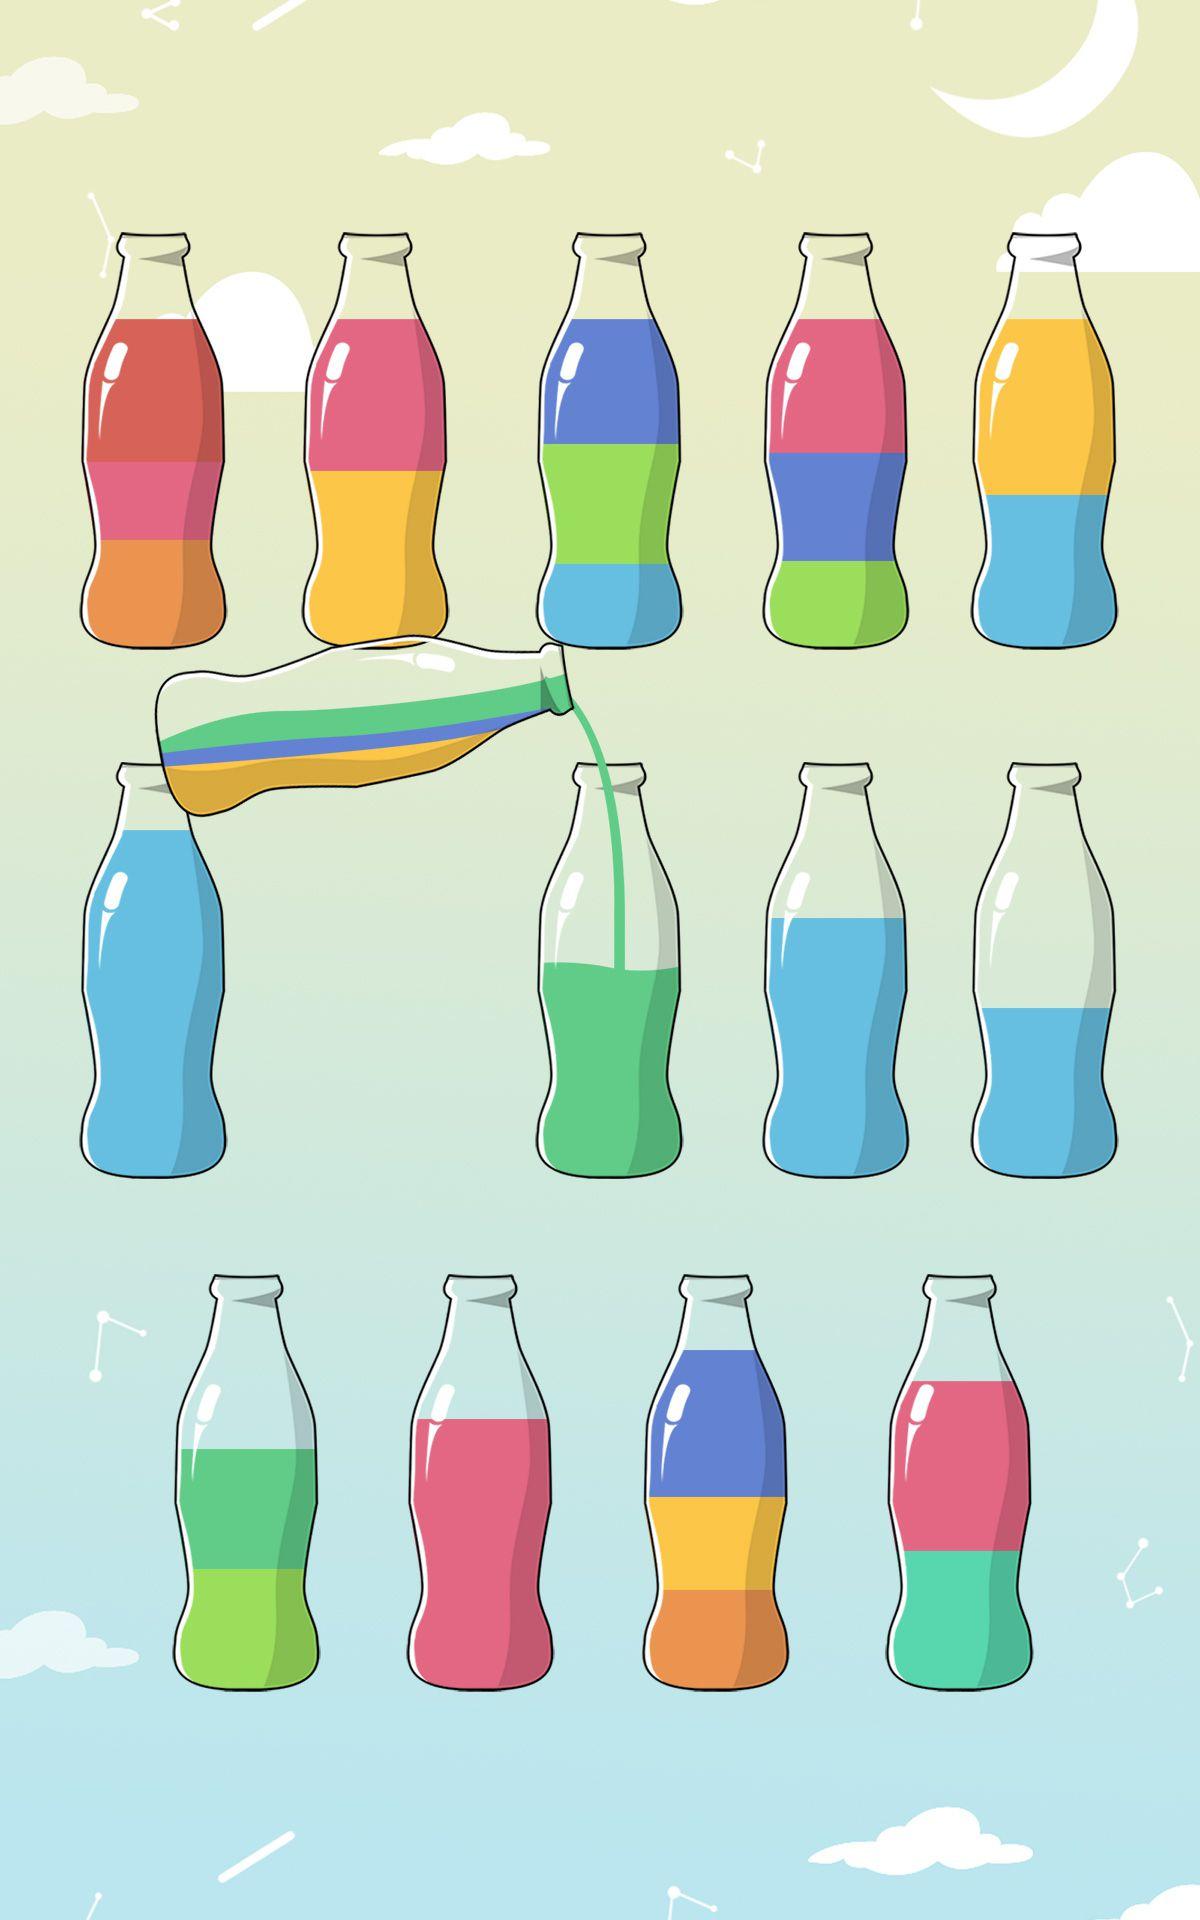 Игра с колбами и жидкостью. Игра в бутылочки с краской. Бутылочки с разноцветной жидкостью. Бутылочки для переливания. Игра бутылочки с разноцветной жидкостью.